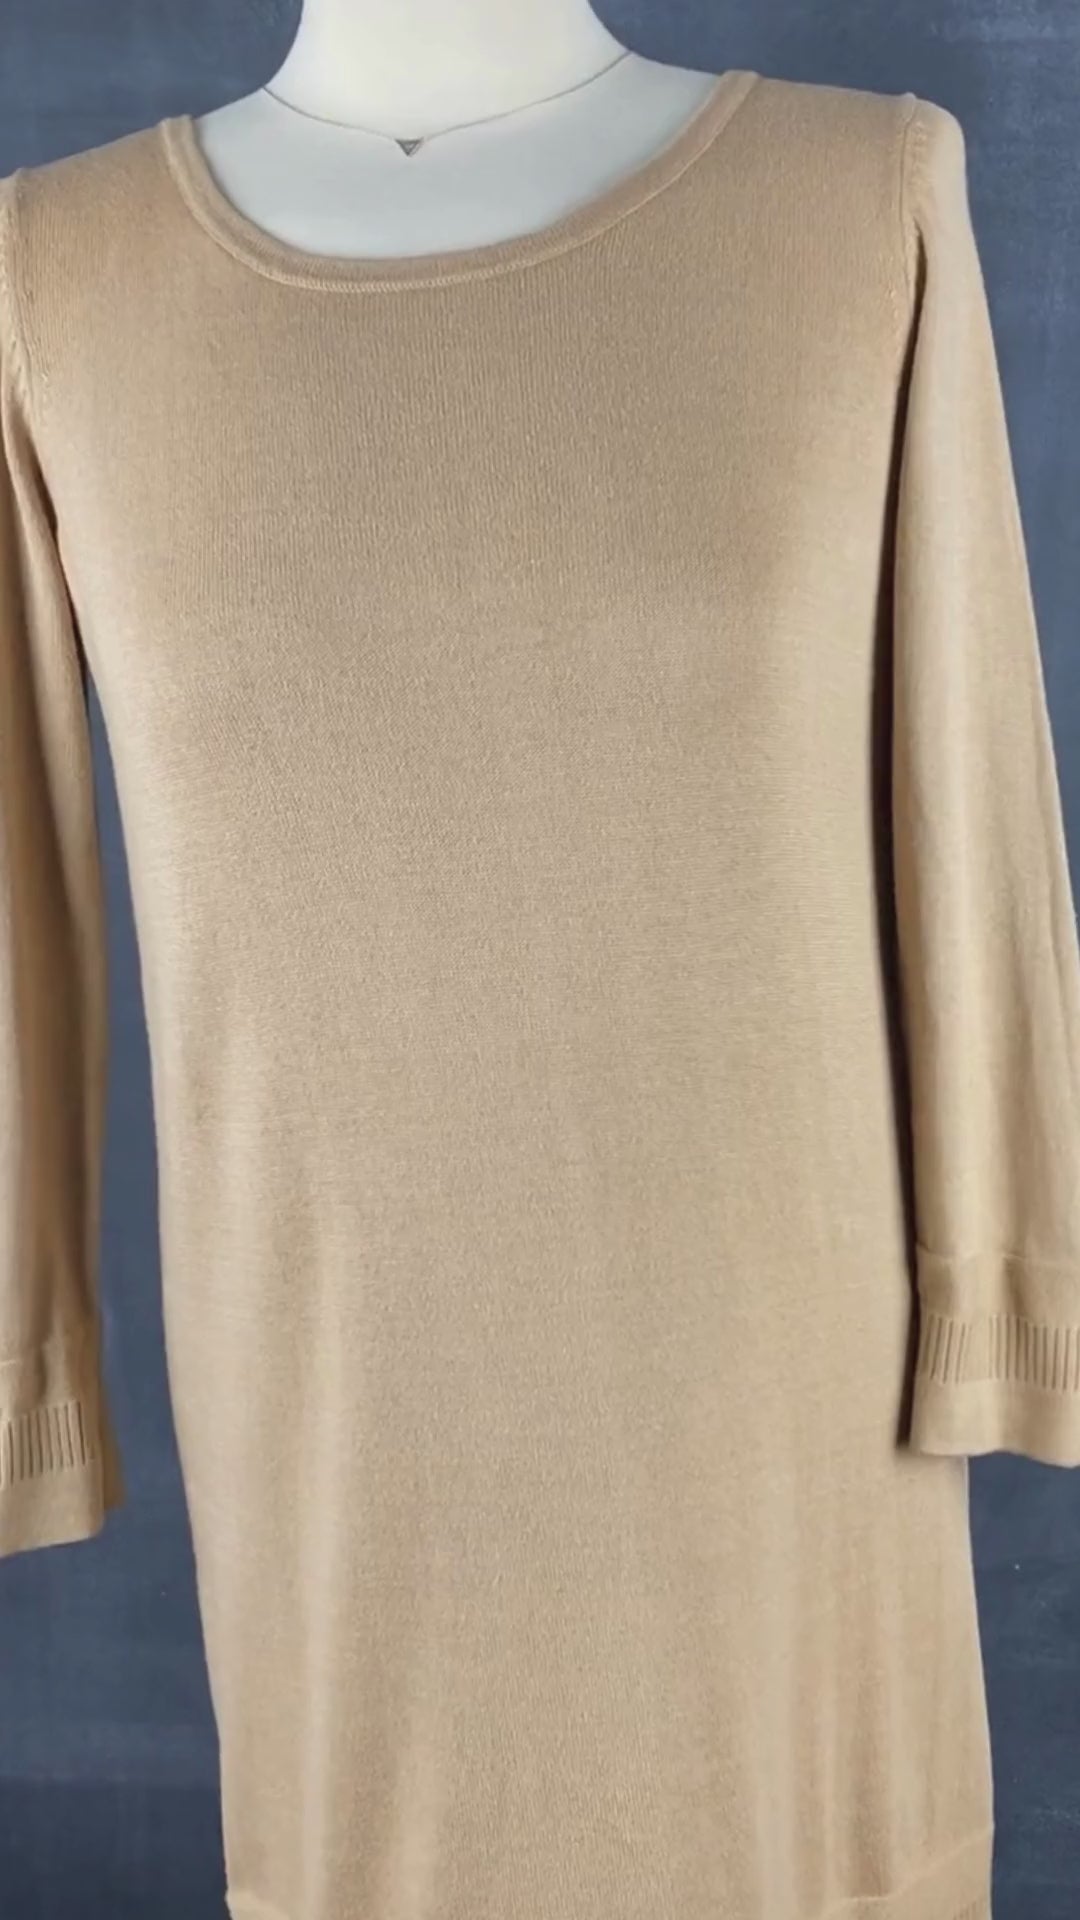 Chandail long tricot coton egyptien Ca va de soi, taille xs/s. Vue de la vidéo qui présente tous les détails du chandail.